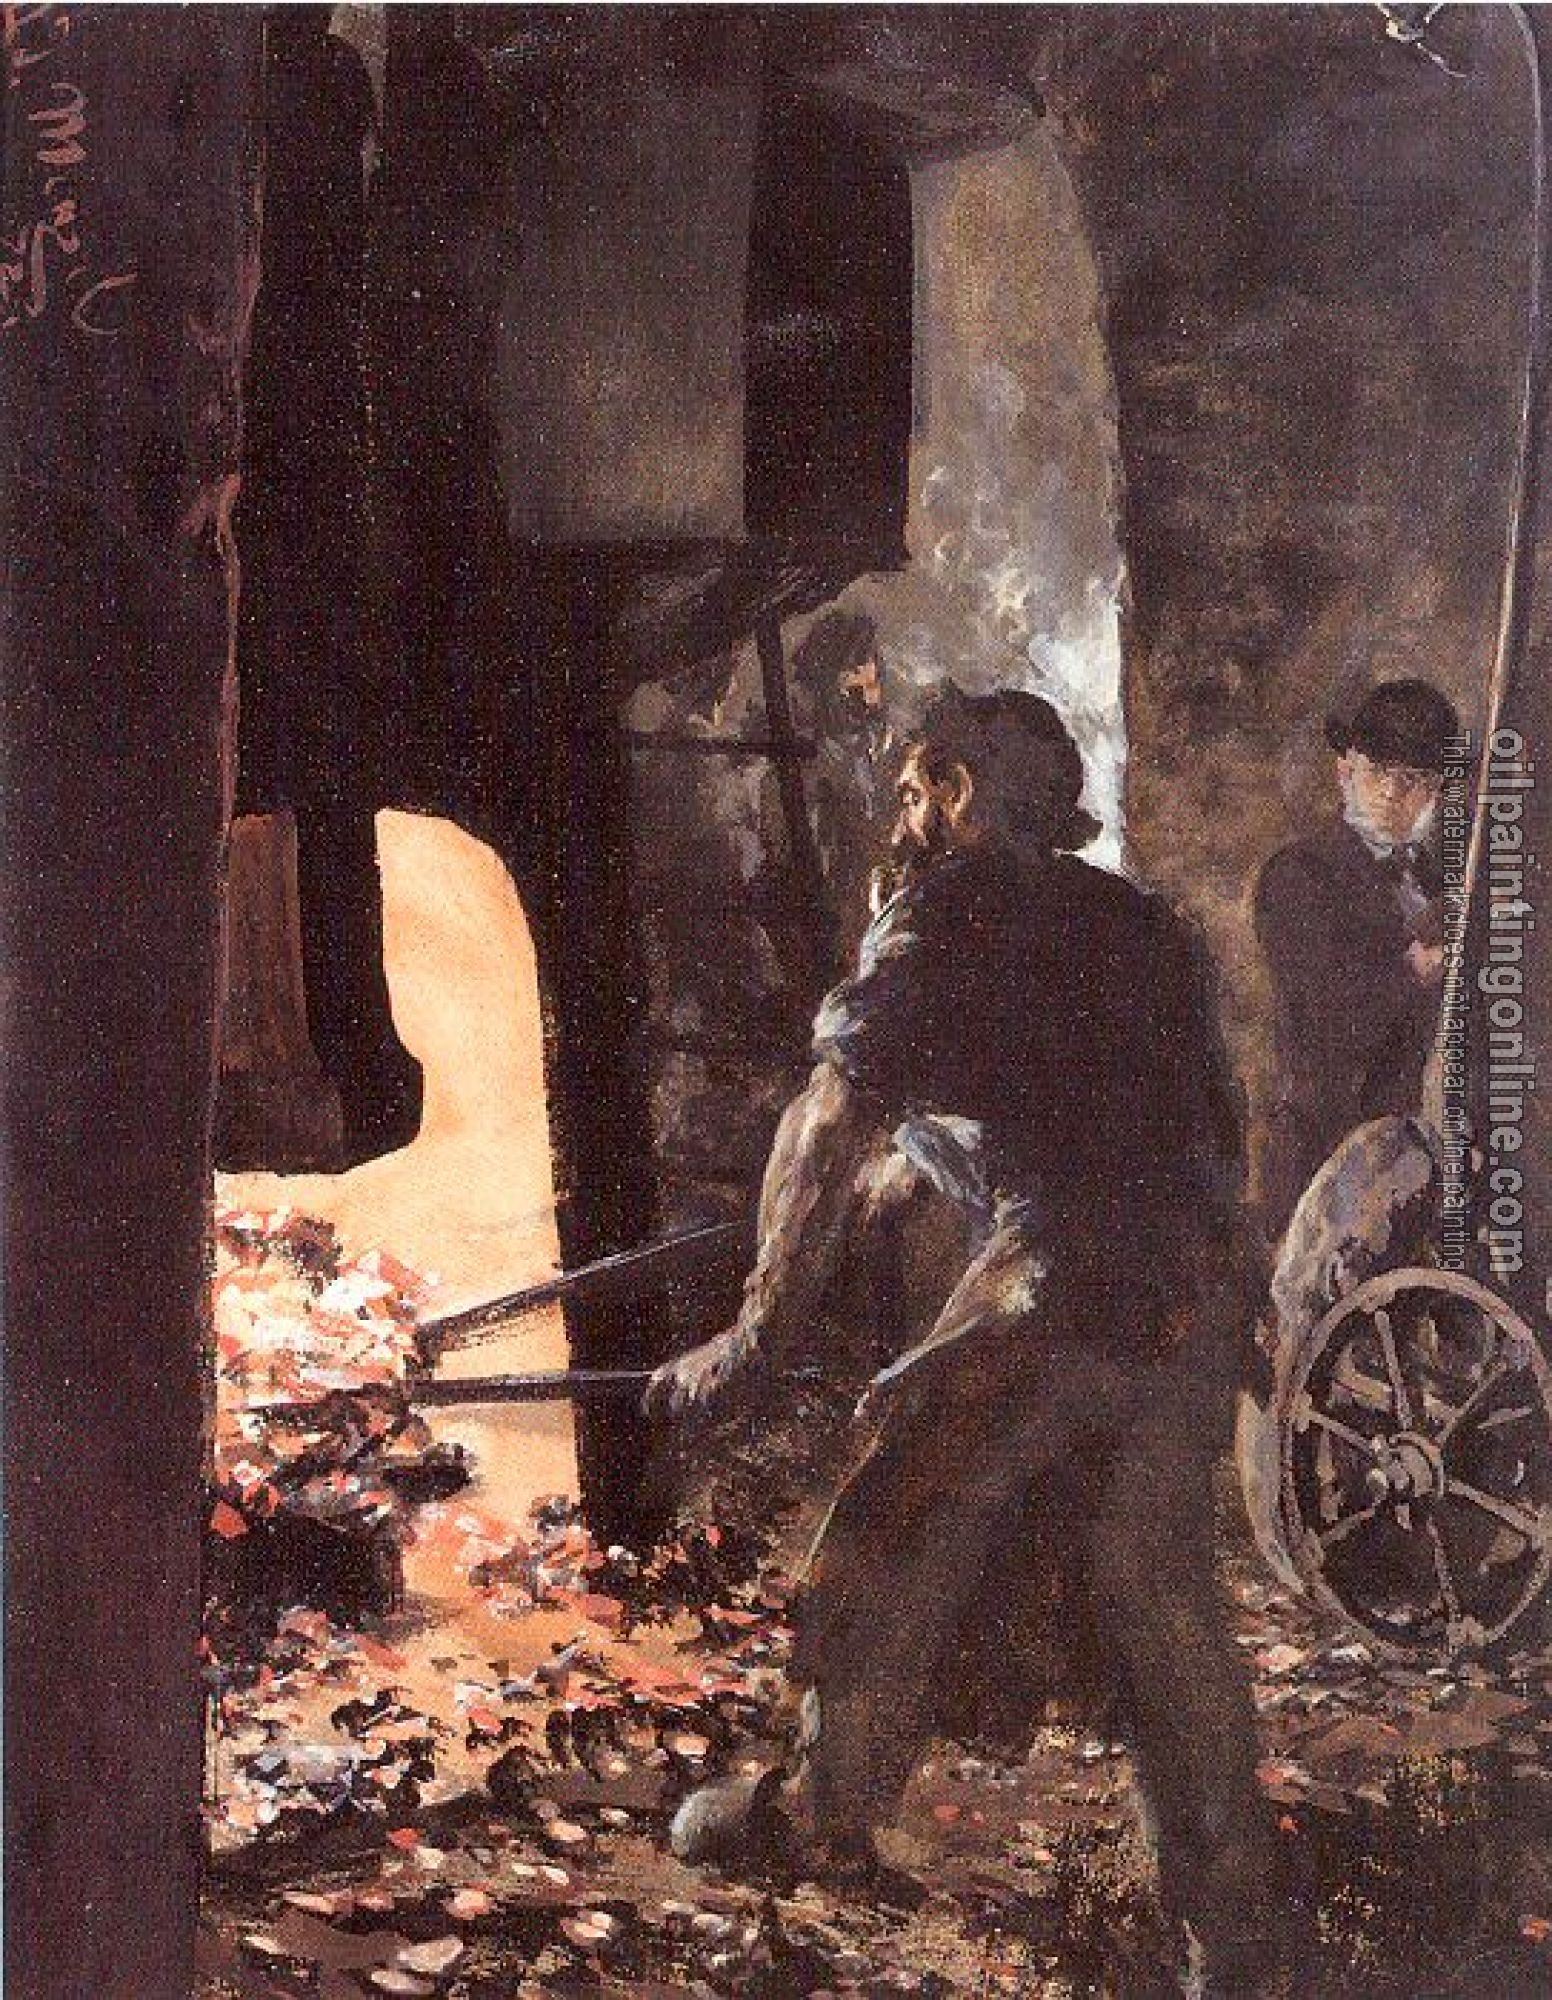 Menzel, Adolph von - Self-Portrait with Worker near the Steam-hammer